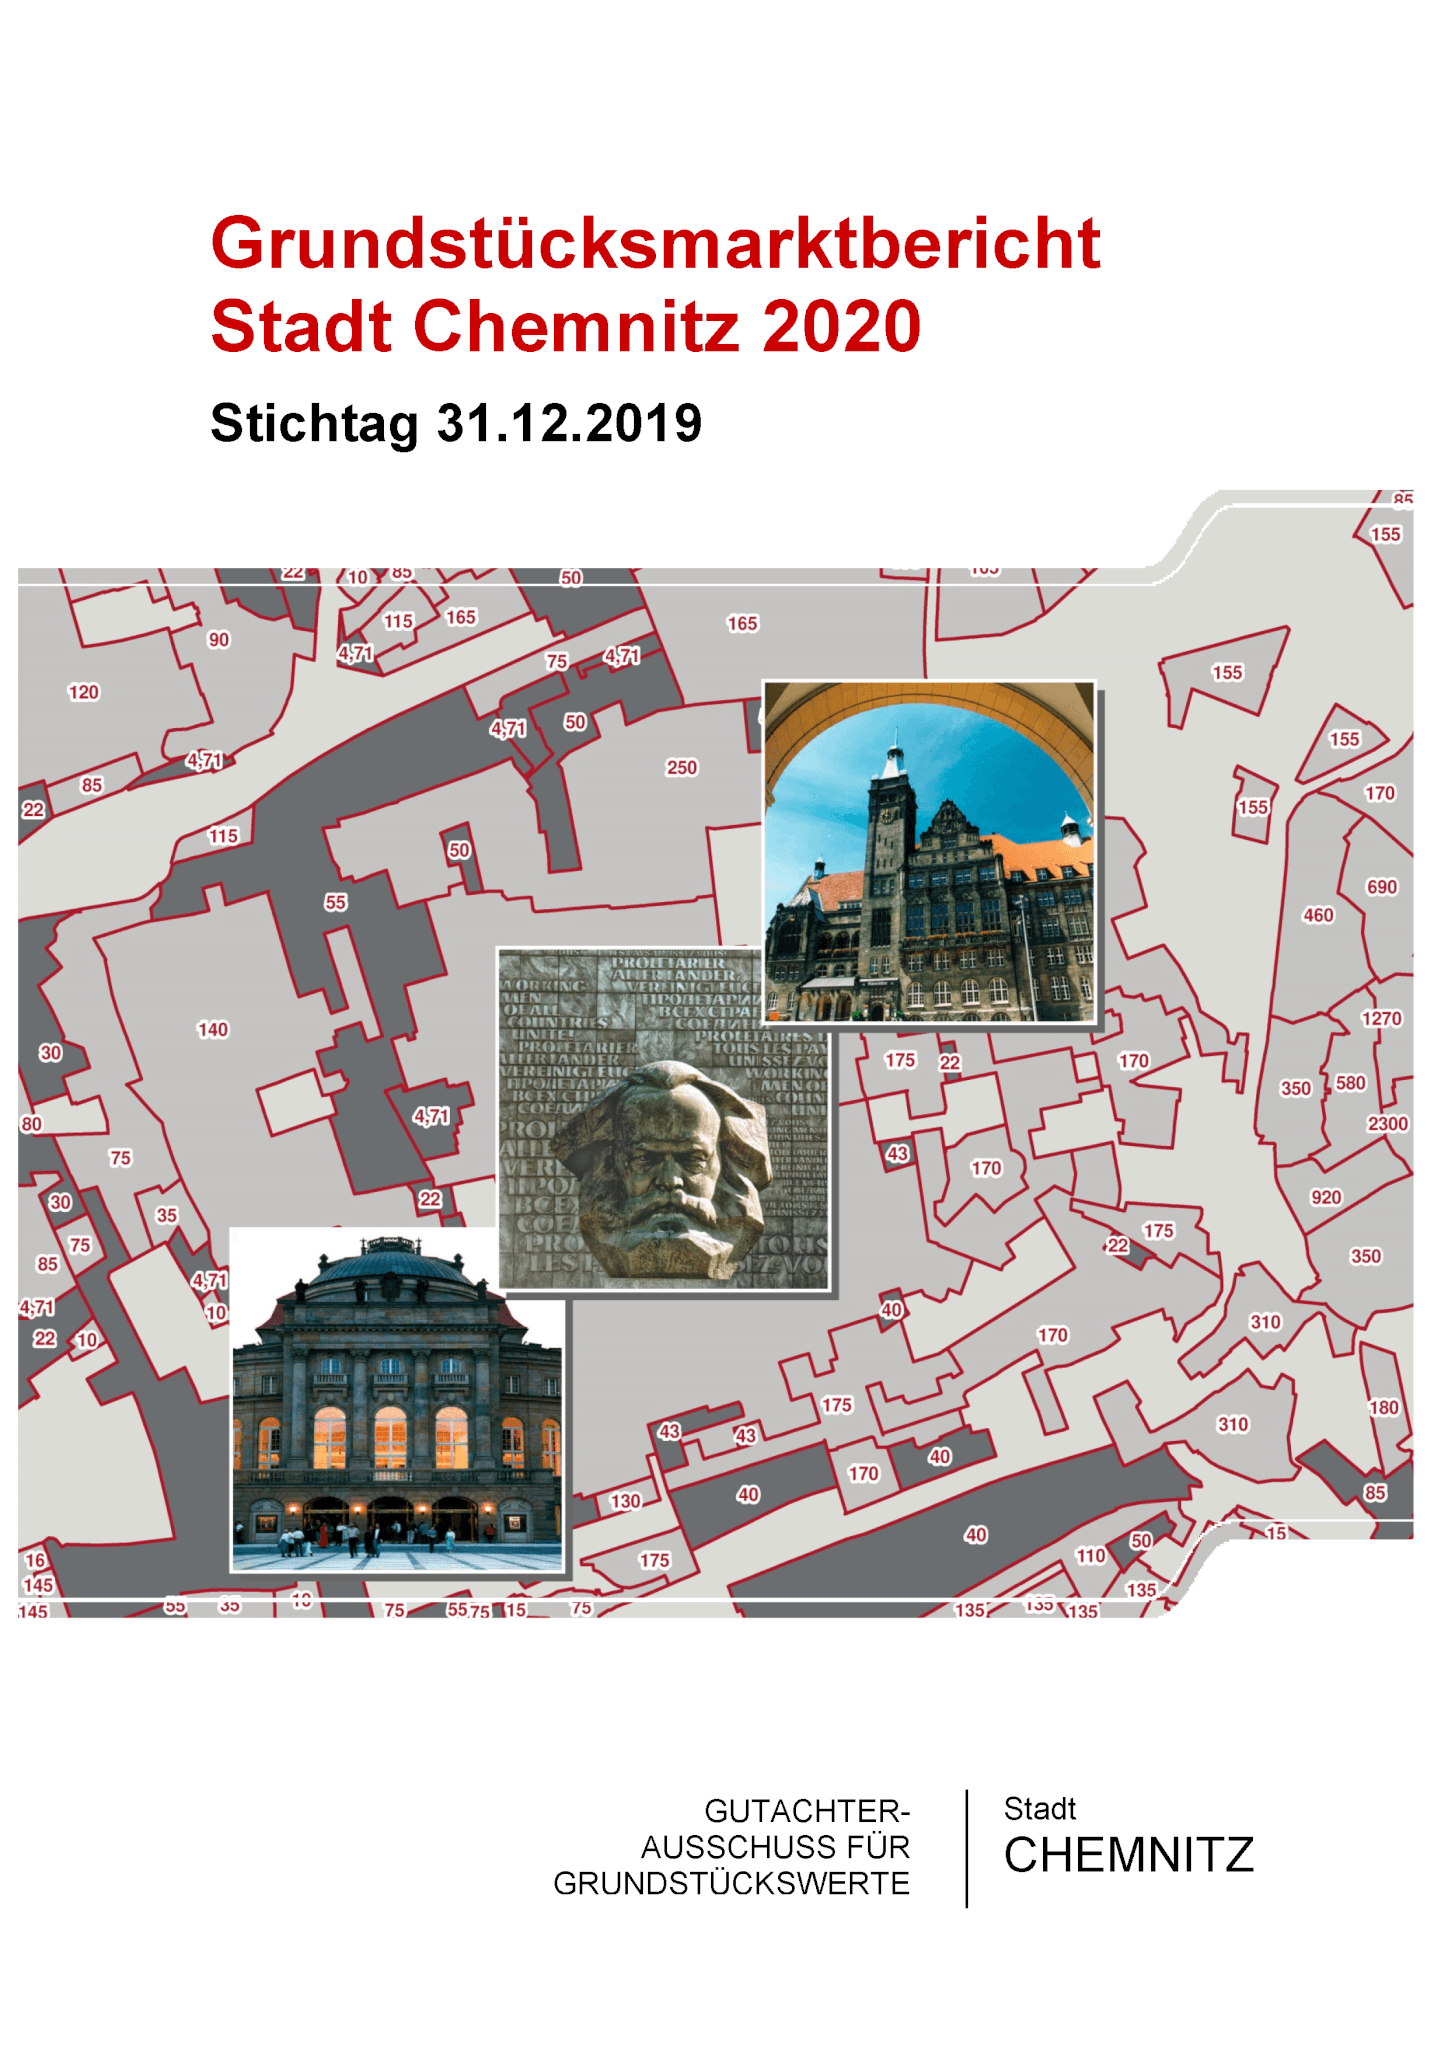 Grundstücksmarktbericht Chemnitz 2020 und neue Bodenrichtwerte veröffentlicht 4